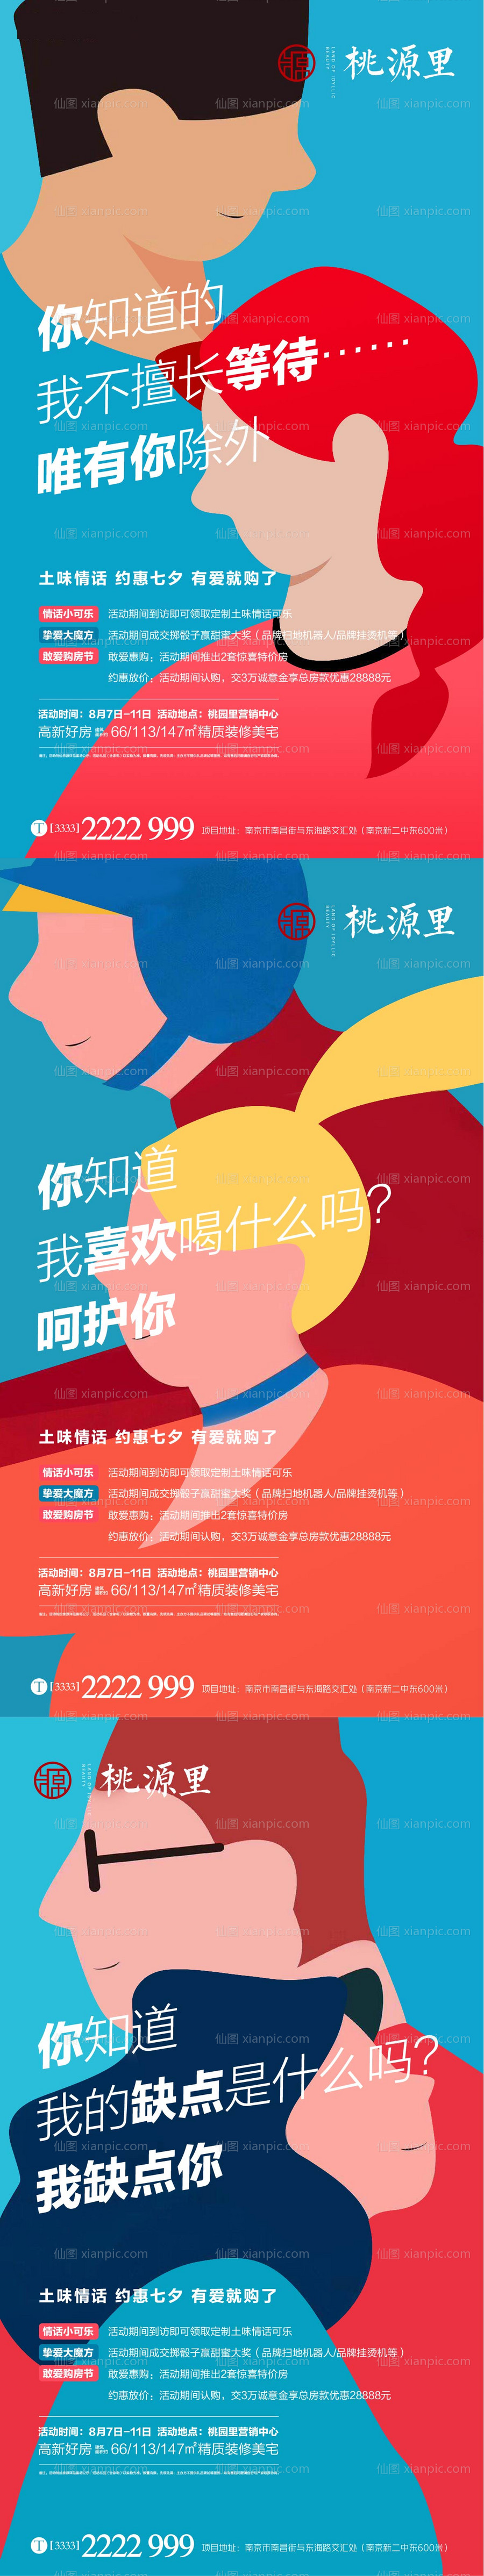 素材乐-七夕土味情话活动系列海报